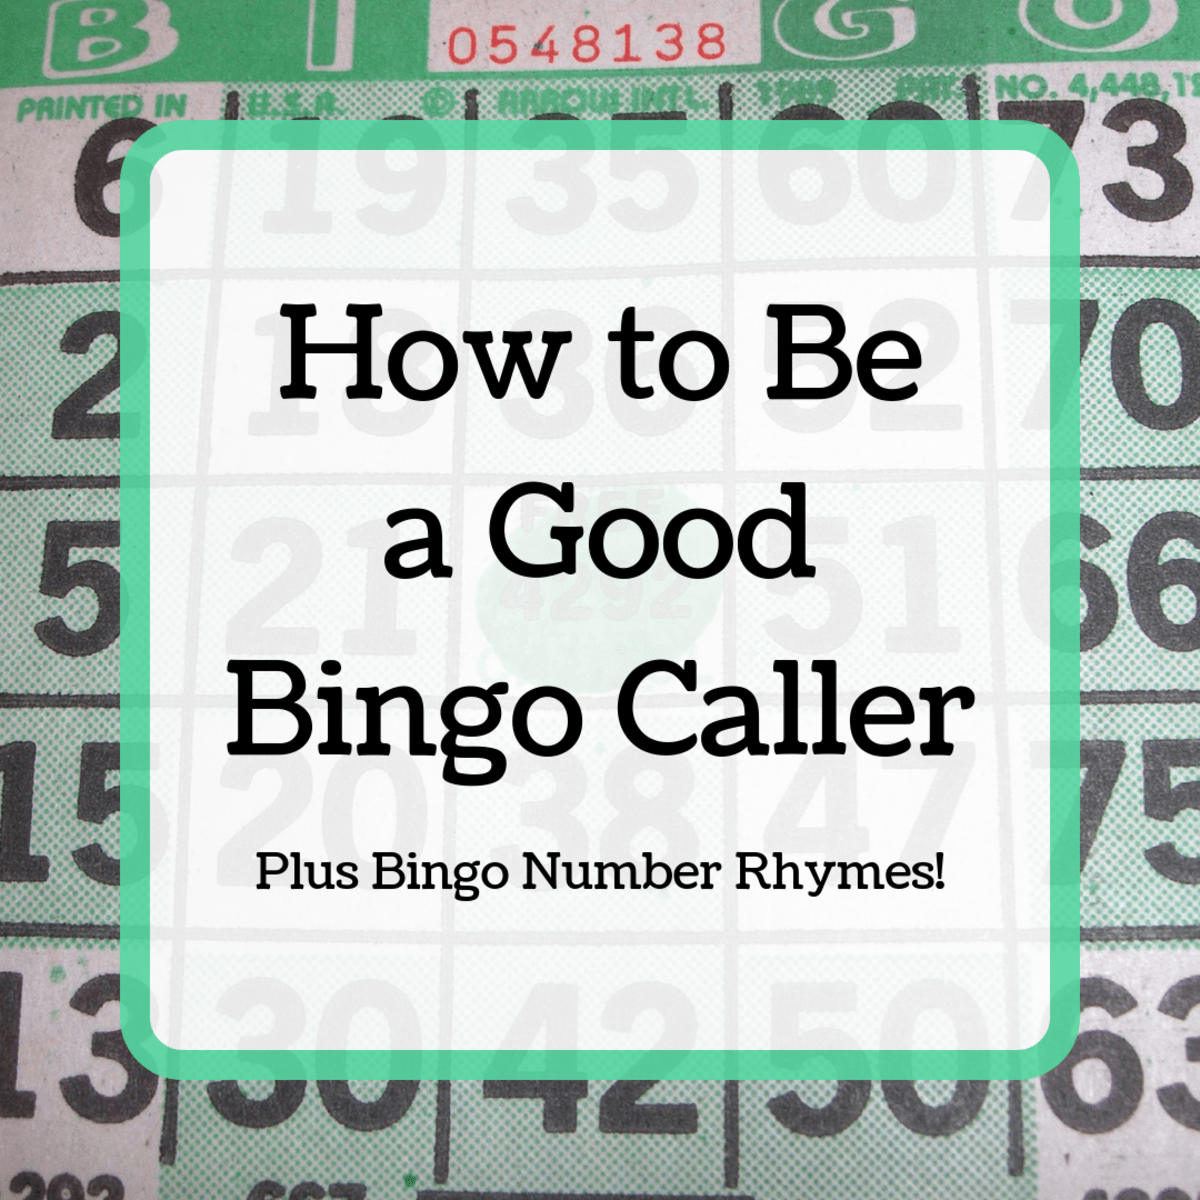 bingo caller 90